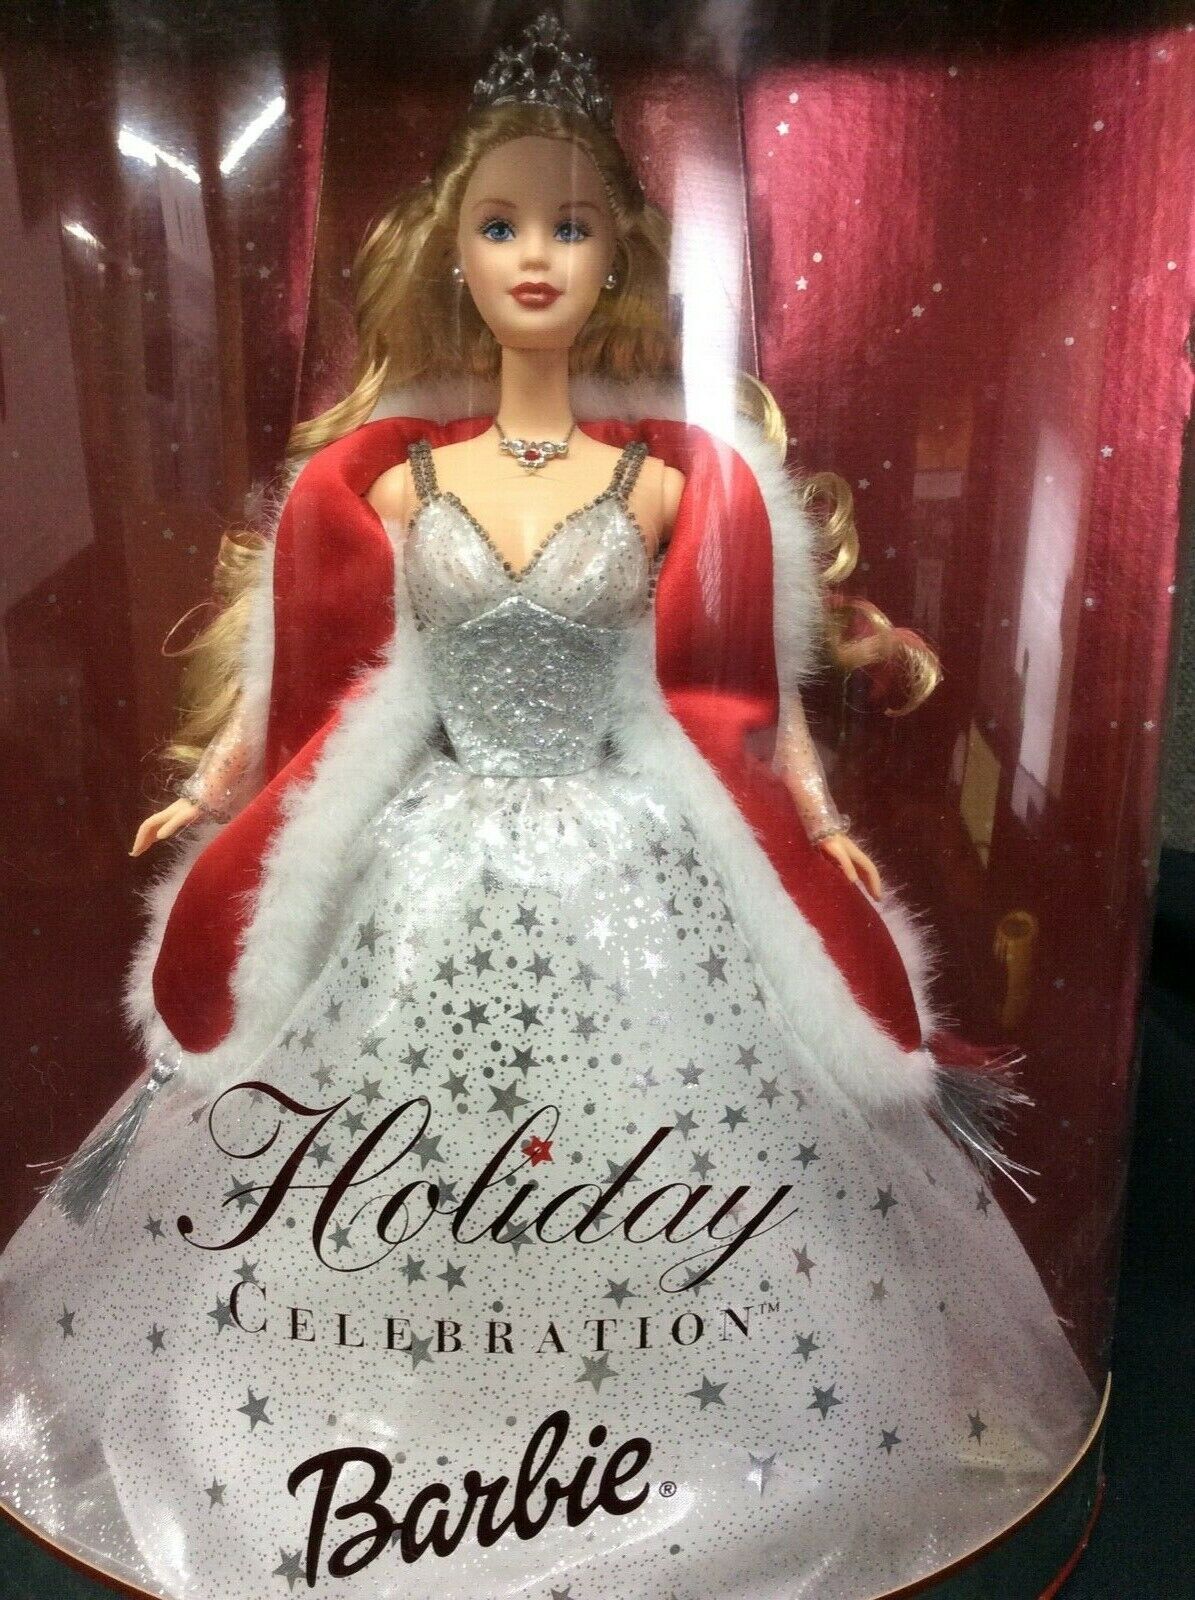 Mattel Holiday Celebration 2001 Barbie Doll 50304 for sale online 